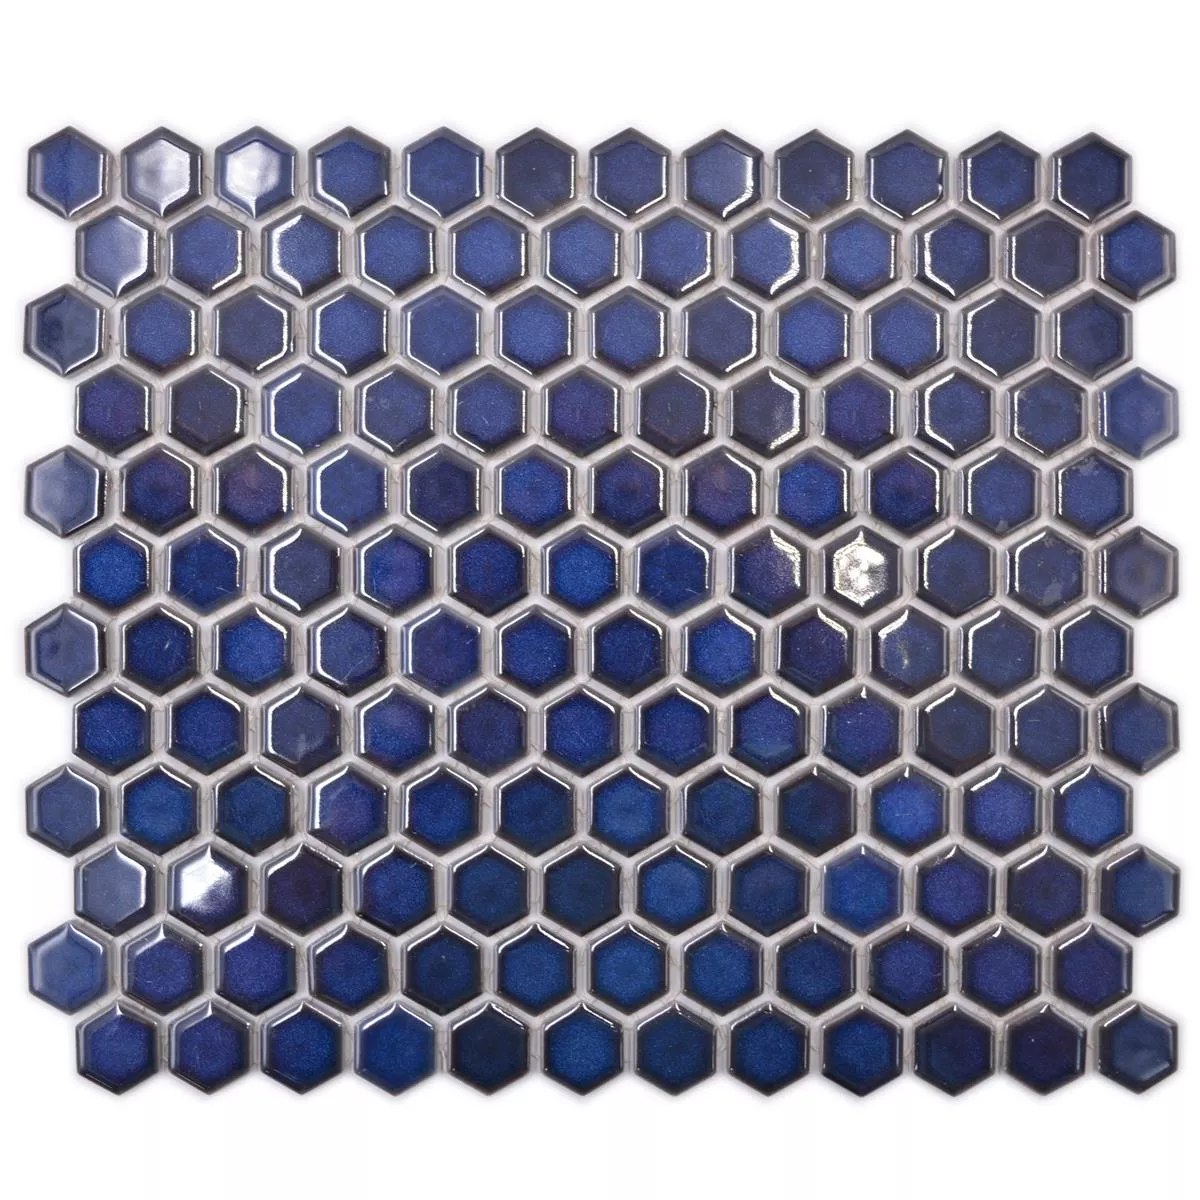 Minta tól től Kerámia Mozaik Salomon Hatszög Kobalt Kék H23